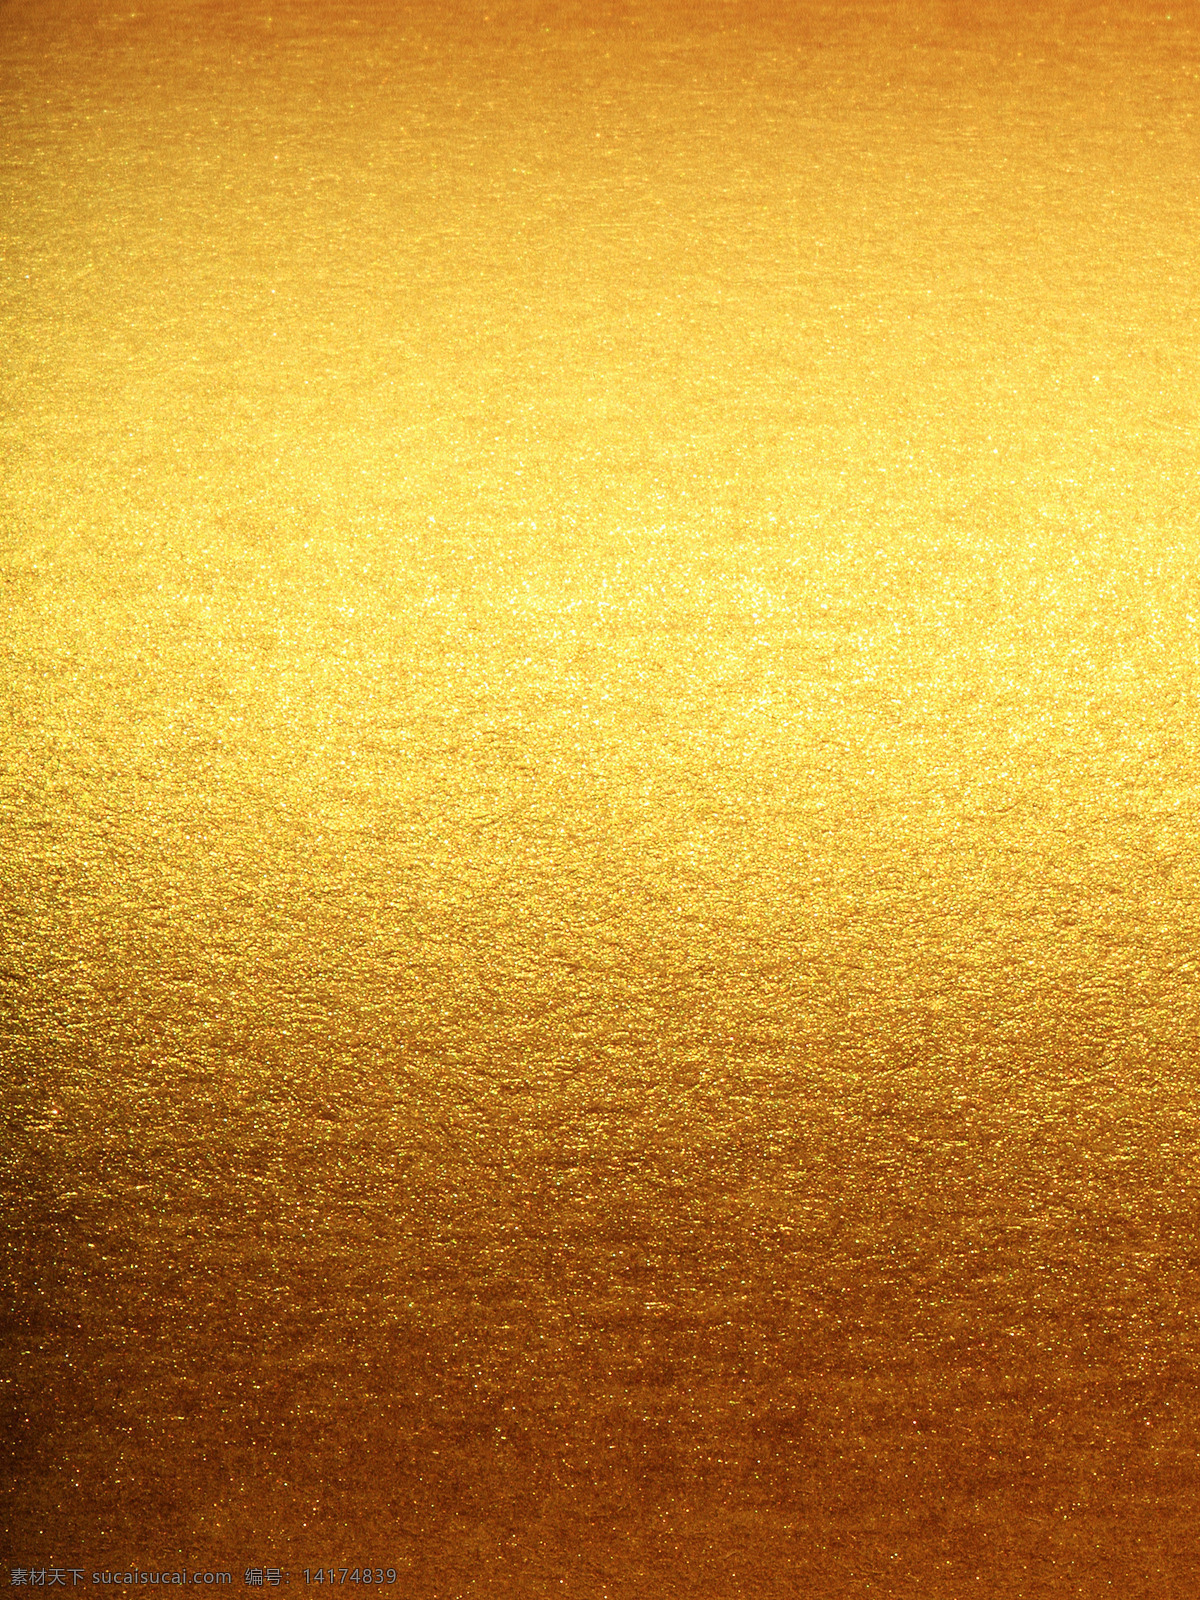 金色背景 金色杂点背景 杂点 杂点背景 背景素材 黄色 设计素材 炫酷背景 烫金 金色 背景 金黄色 烫金效果